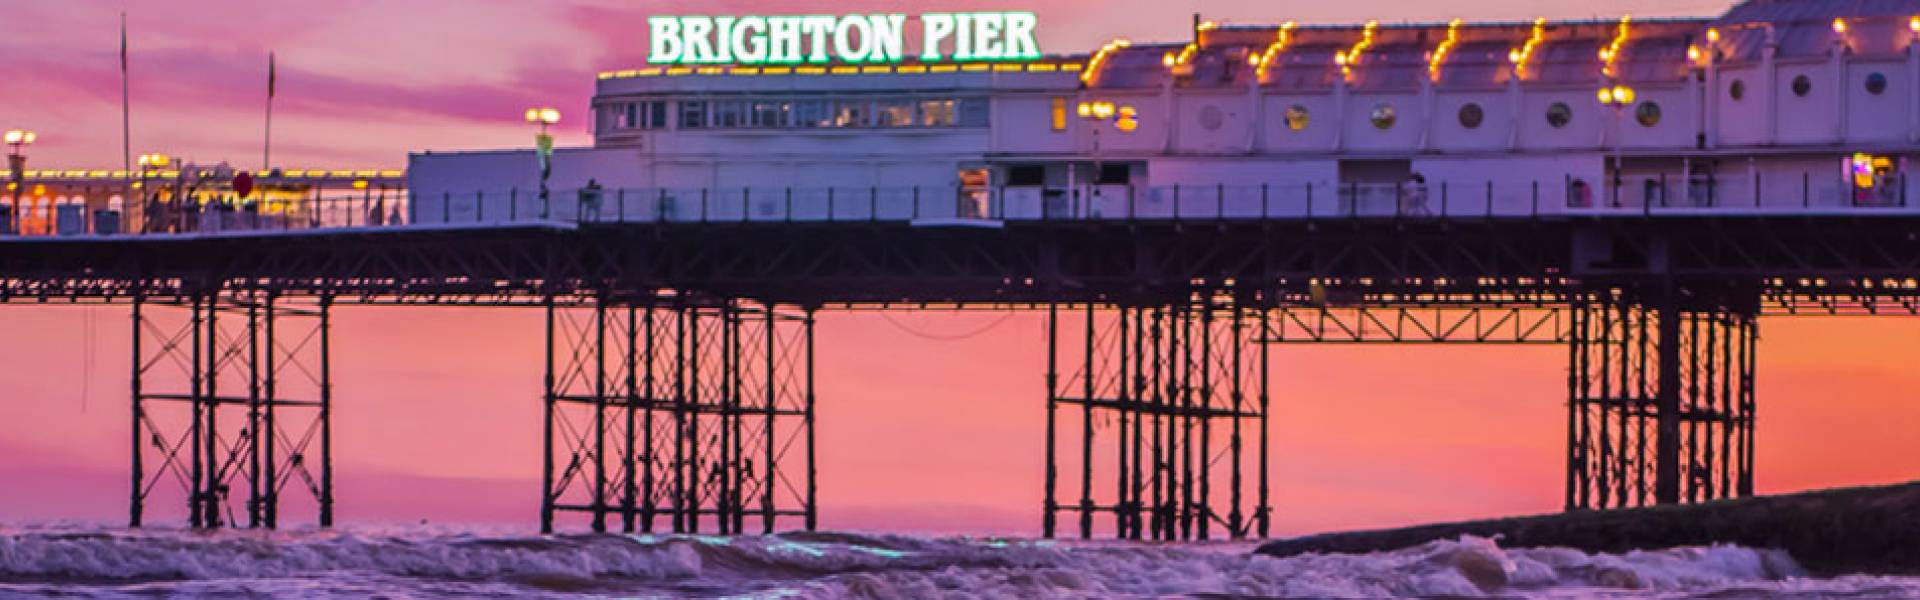 Brighton Pier, Brighton, East Sussex, England at sunset.